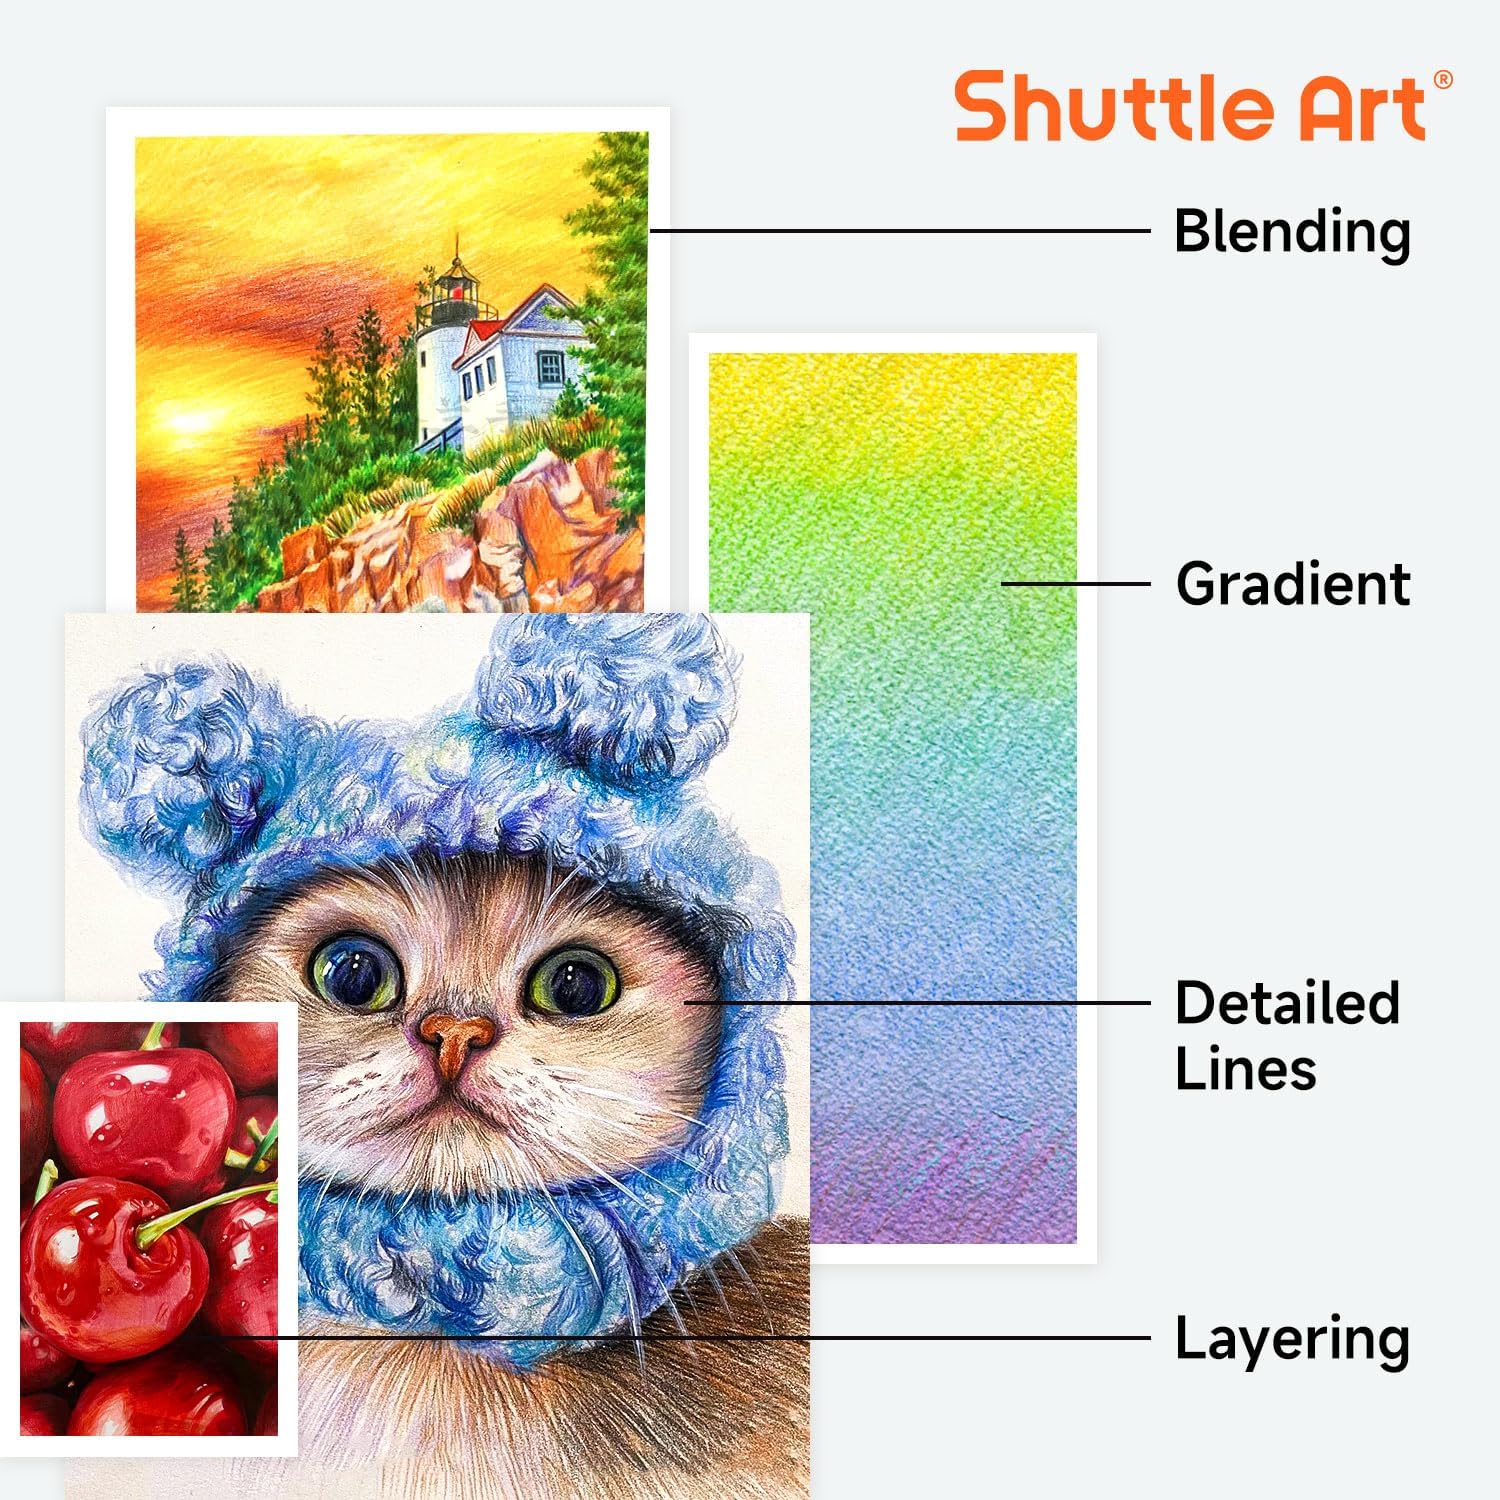 138 Colors Professional Colored Pencils, Shuttle Art Soft Core